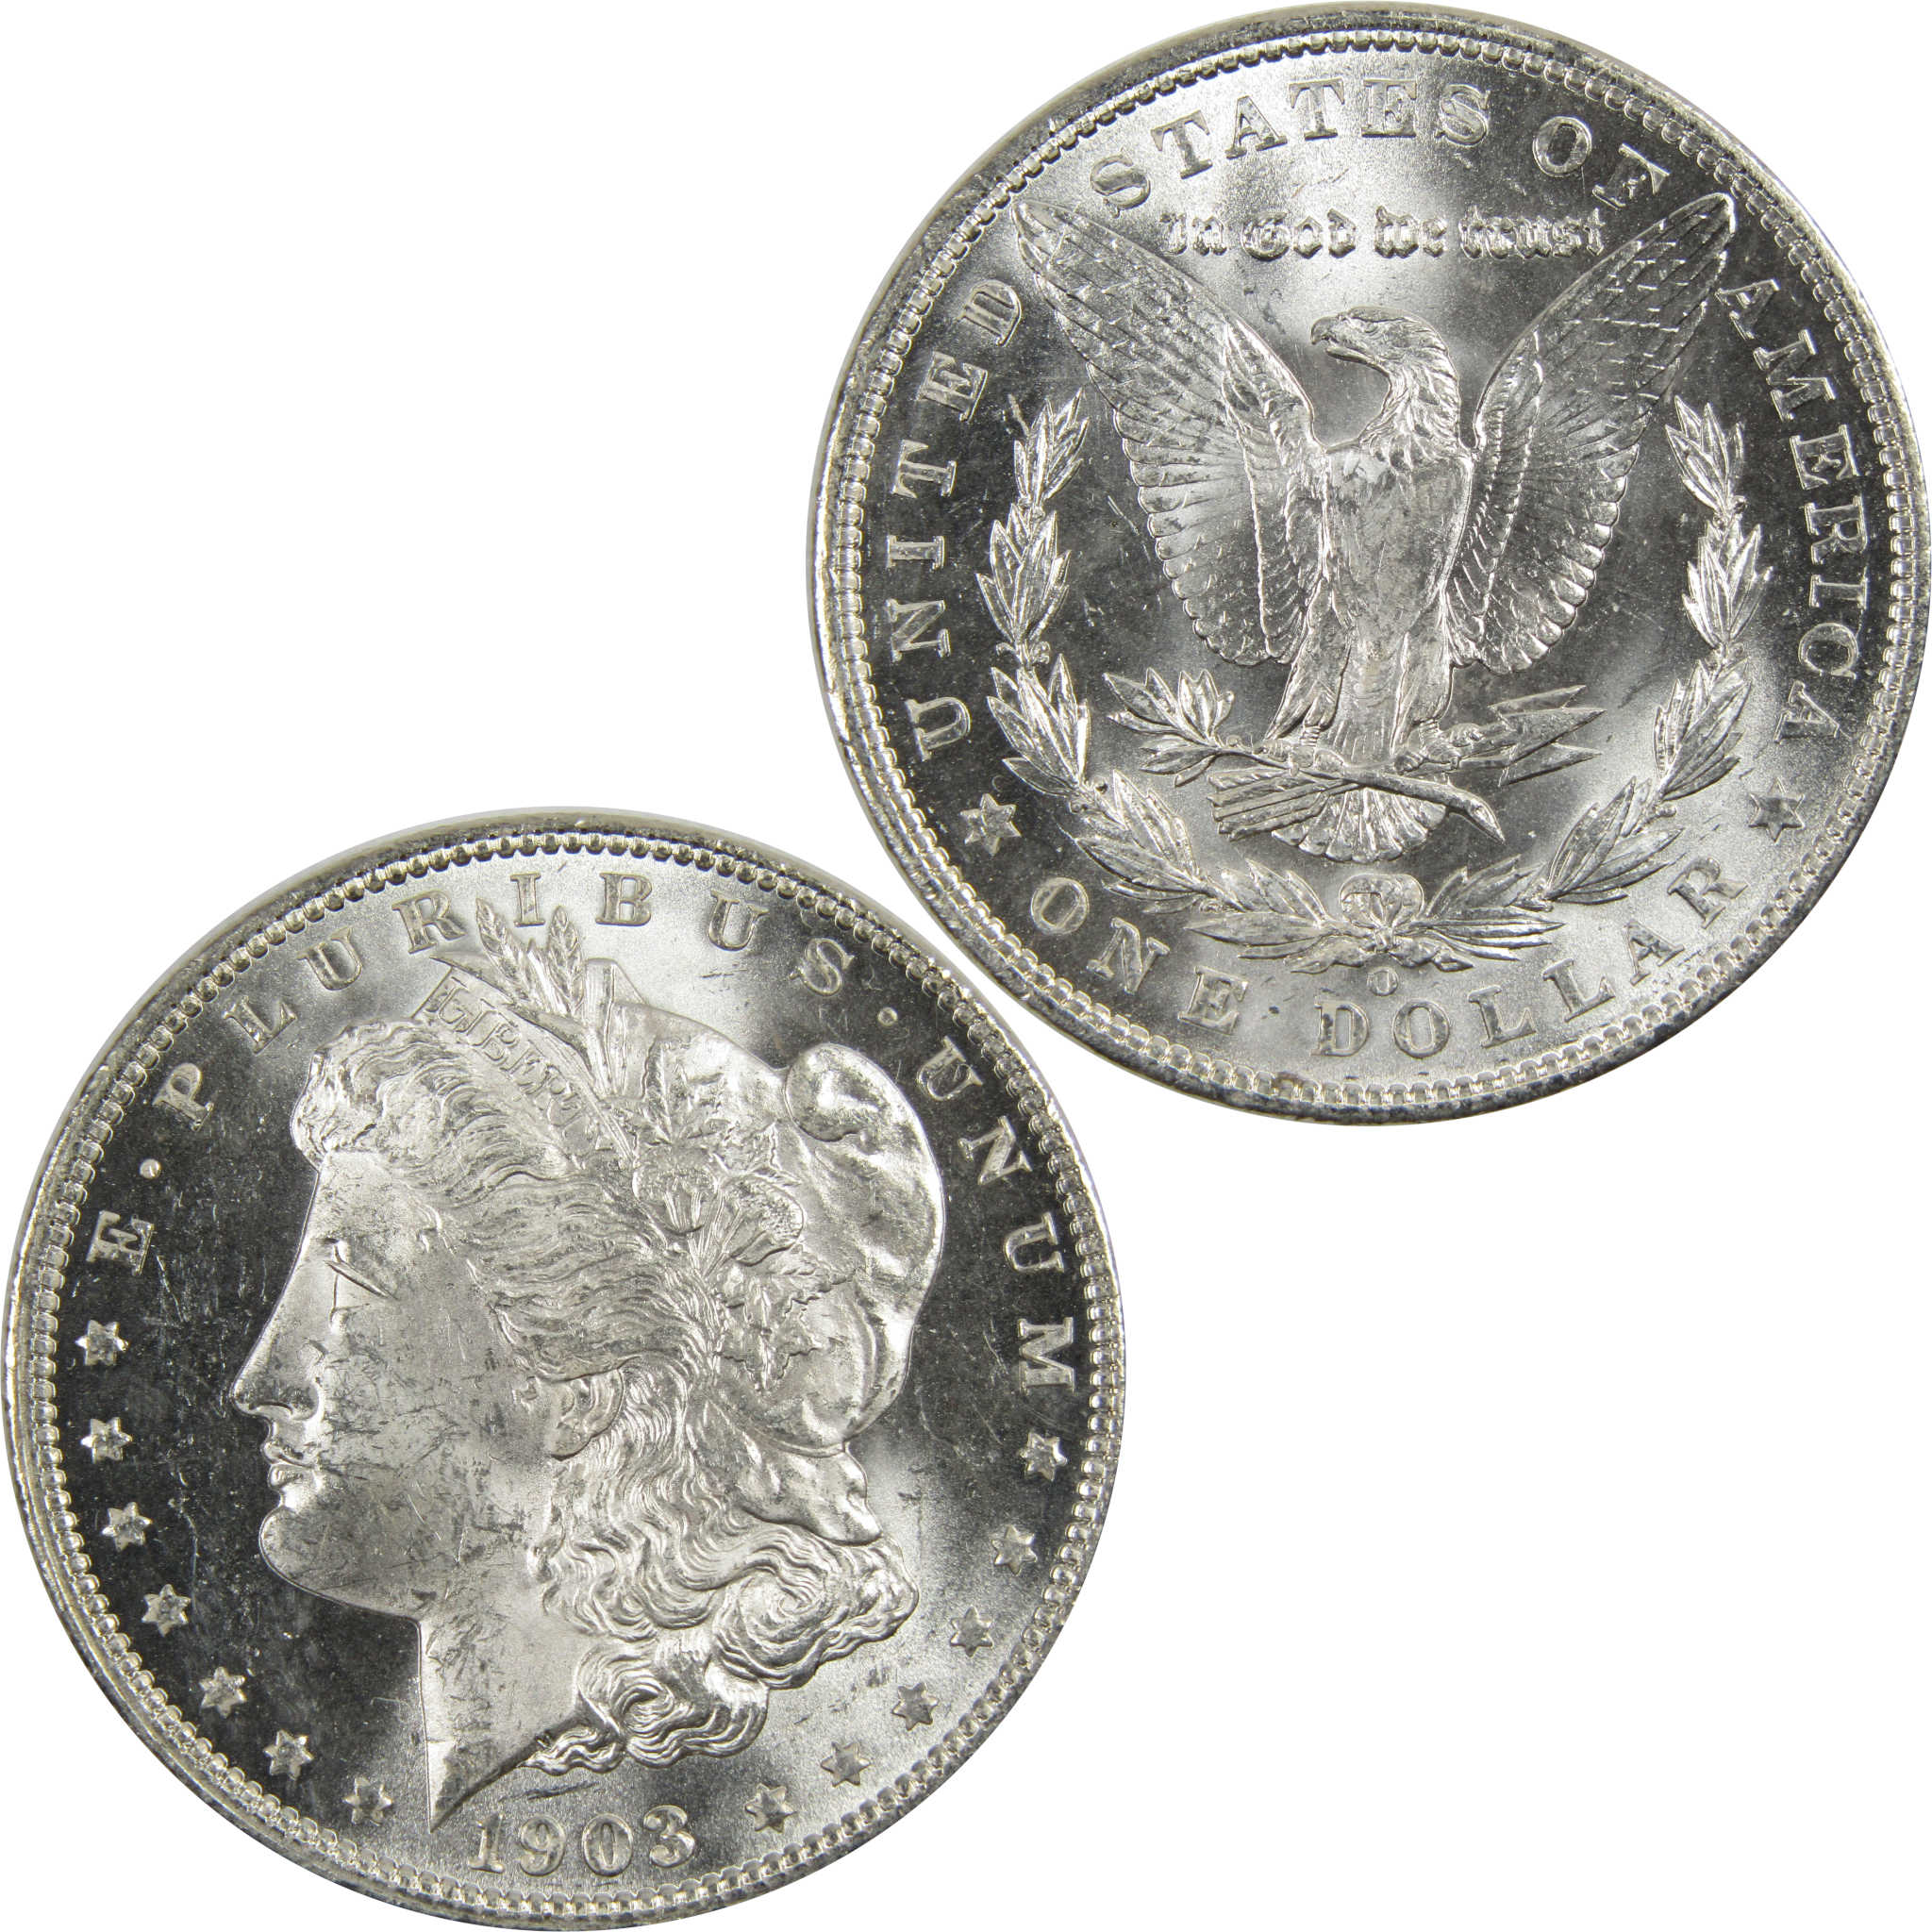 1903 O Morgan Dollar BU Choice Uncirculated 90% Silver $1 SKU:I7910 - Morgan coin - Morgan silver dollar - Morgan silver dollar for sale - Profile Coins &amp; Collectibles